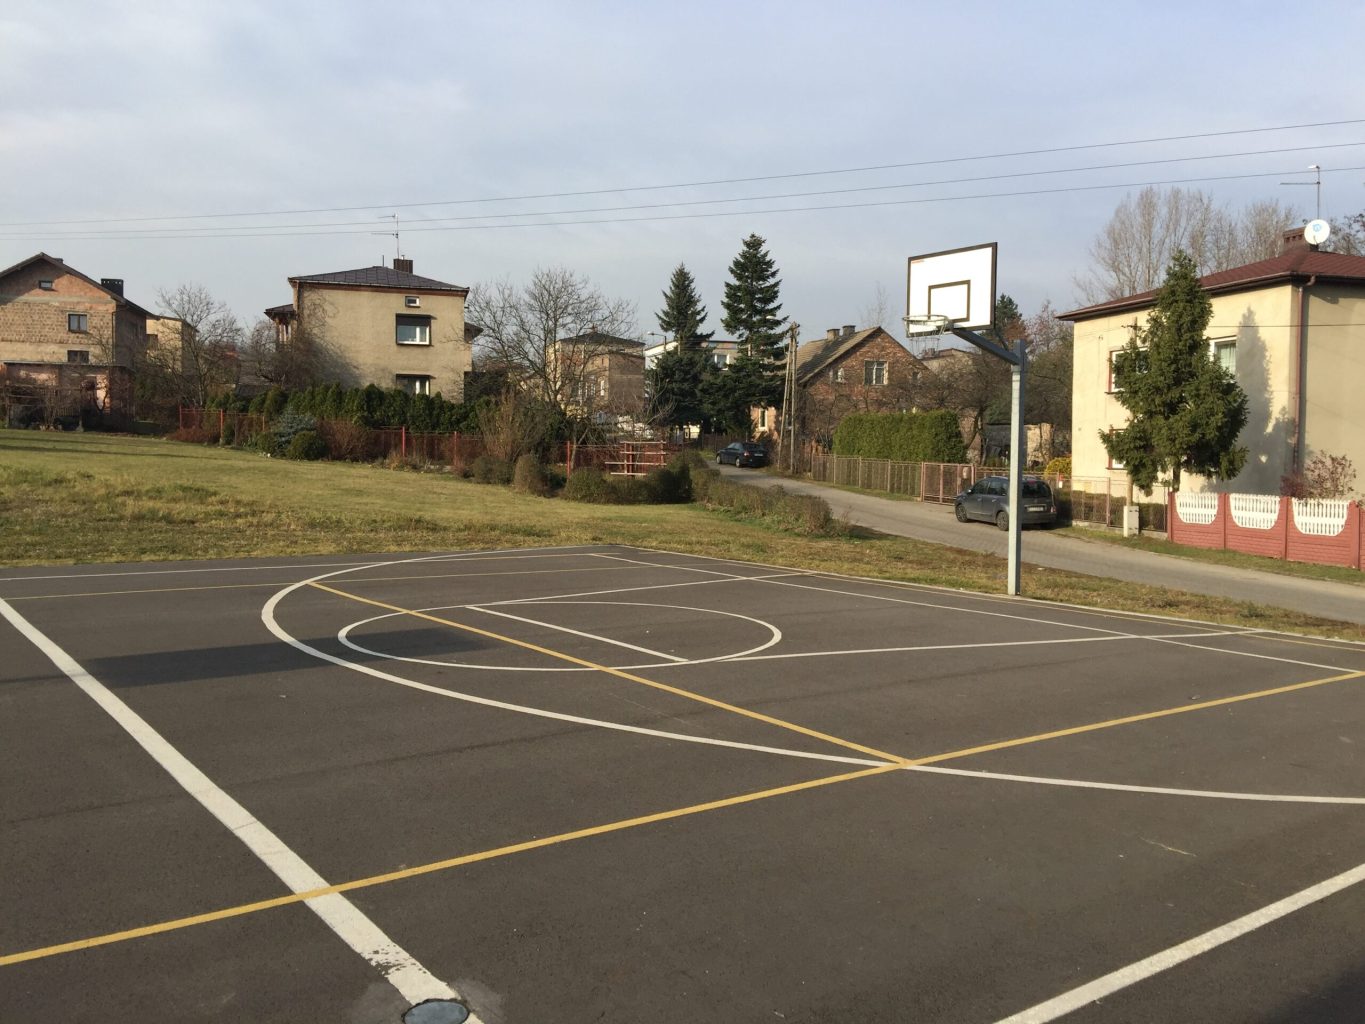 Boisko asfaltowe do gry w koszykówkę, w tle domy jednorodzinne